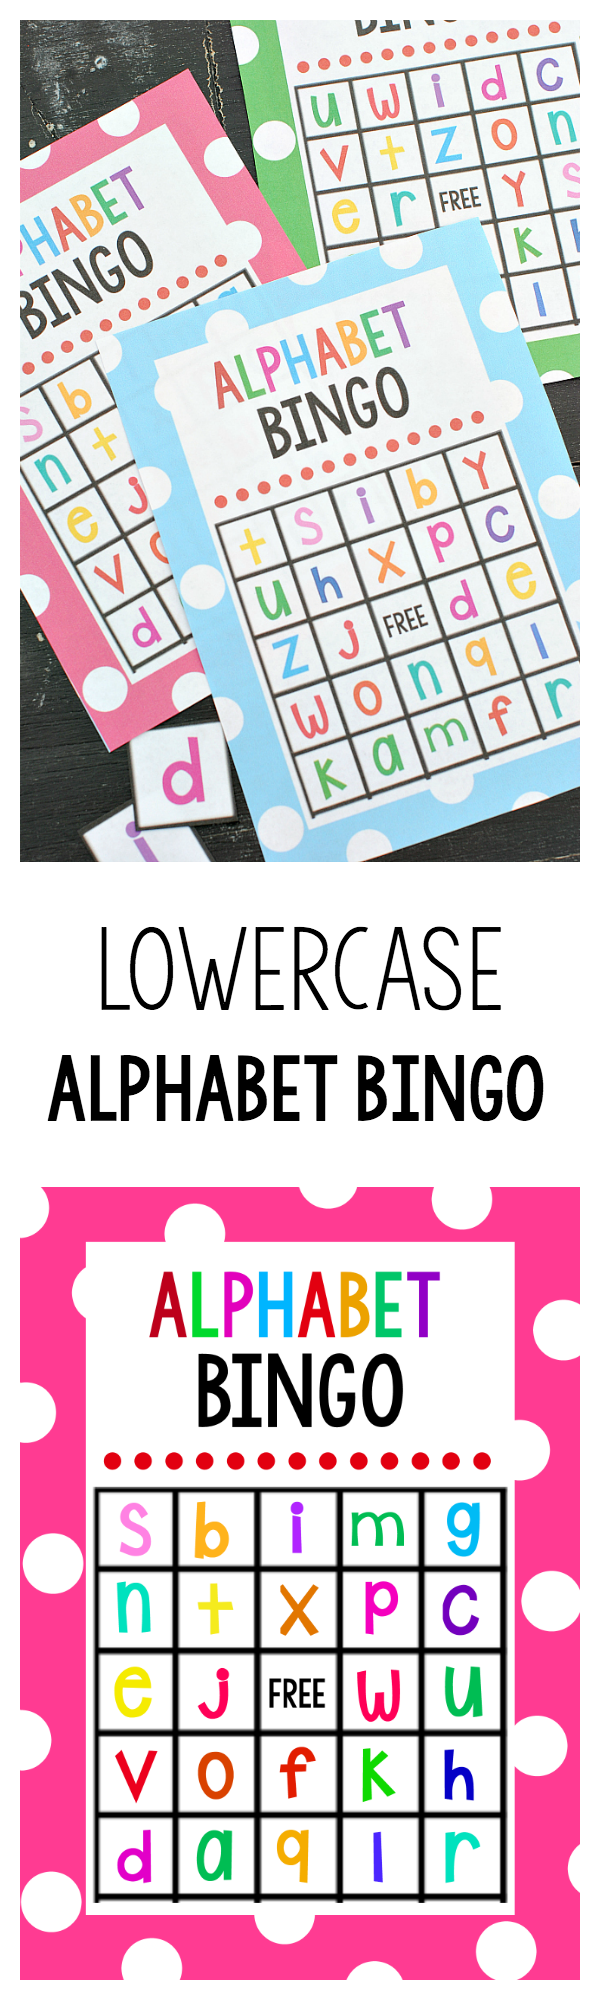 printable-alphabet-bingo-printable-world-holiday